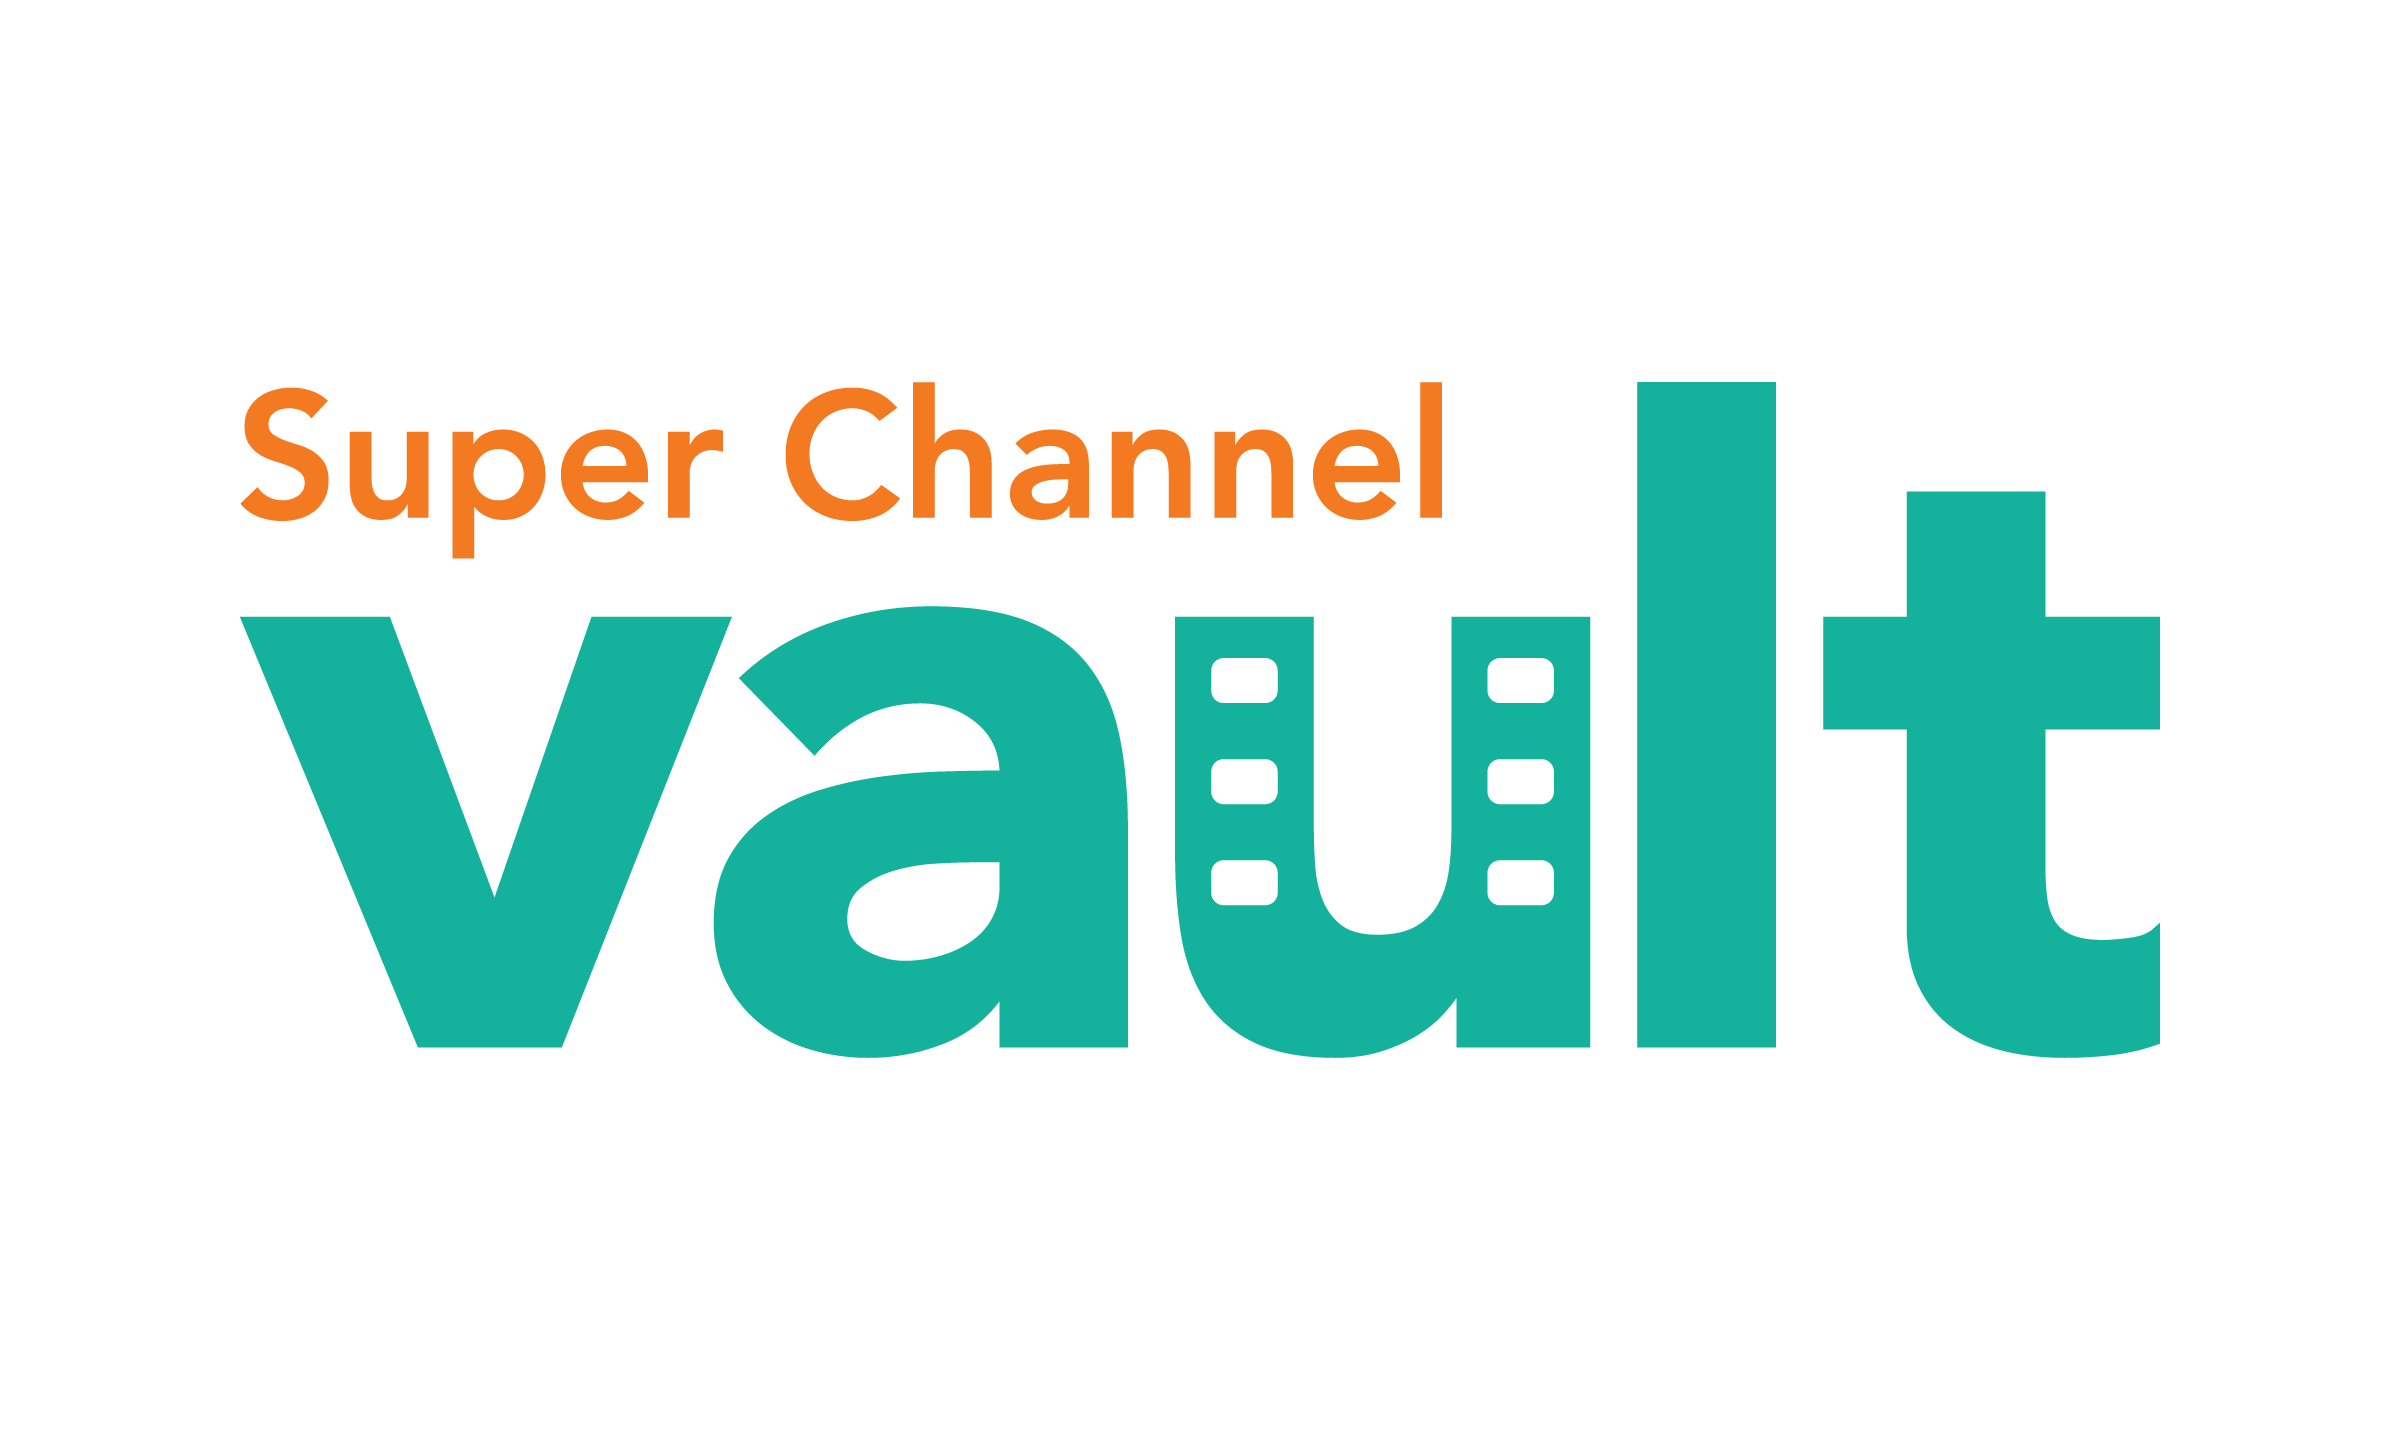 Super Channel Vault logo